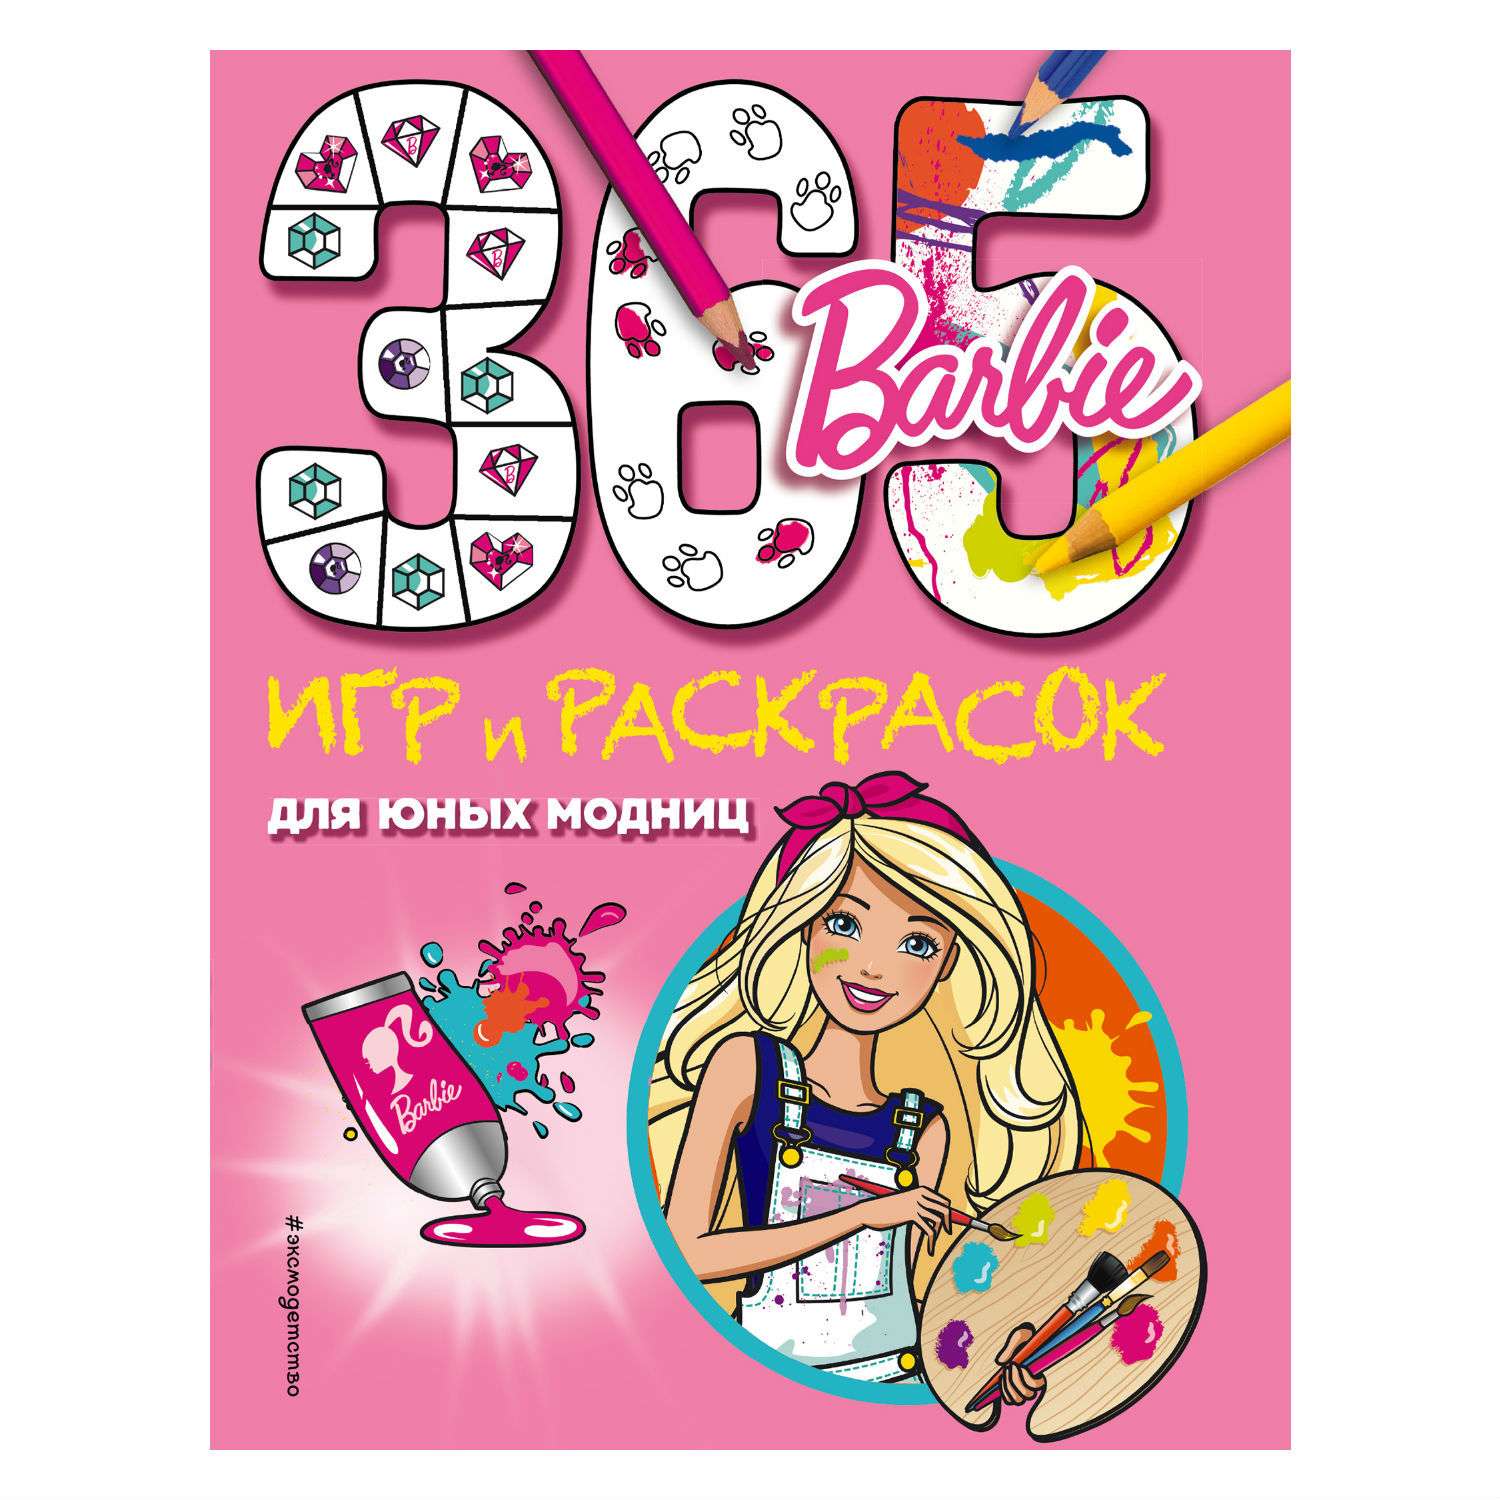 Книга Эксмо Barbie 365 игр и раскрасок для юных модниц - фото 1